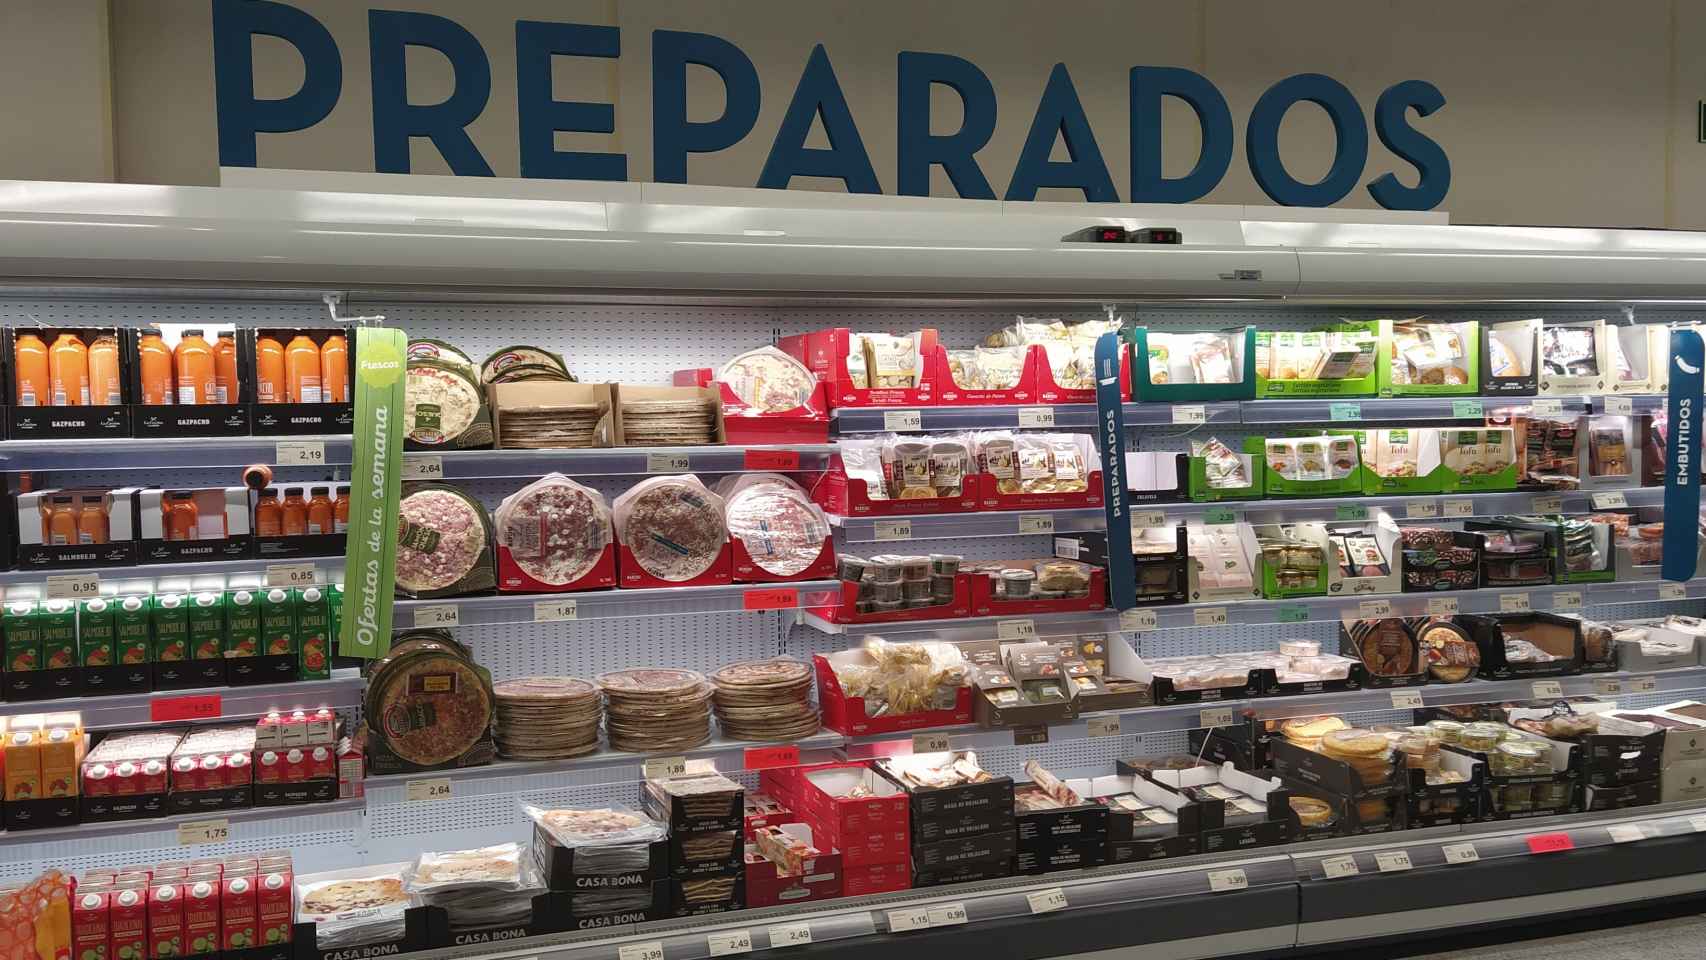 La sección de 'Preparados' del supermercado alemán Aldi, en Majadahonda (Madrid).